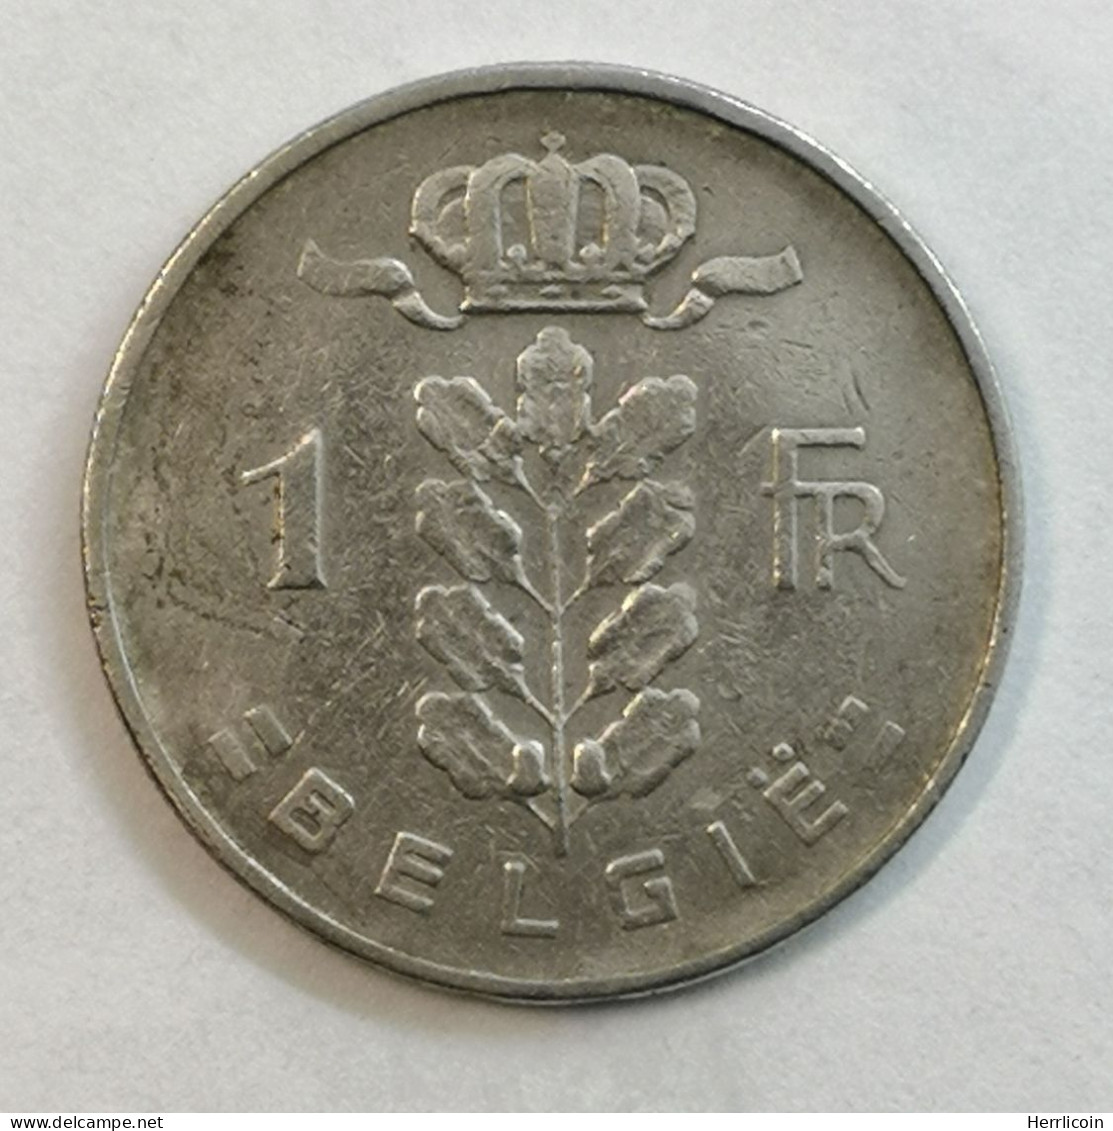 Monnaie Belgique - 1950 - 1 Franc - Type Cérès En Néerlandais - 1 Franc